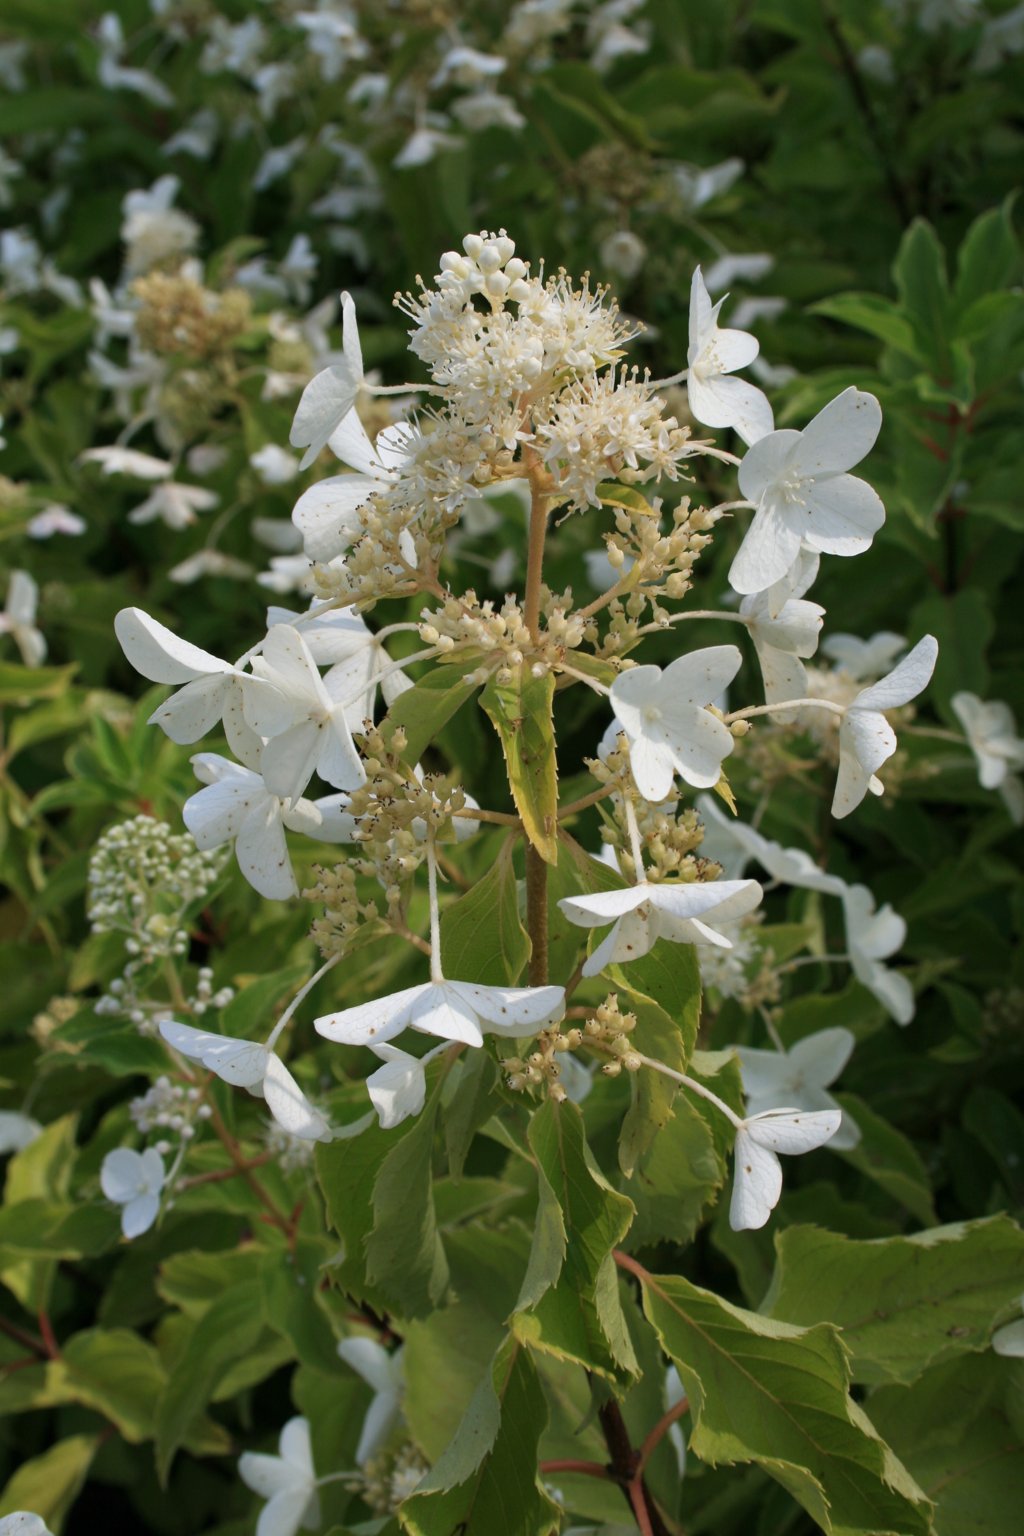 Hortensja bukietowa "Levana" / Hydrangea paniculata "Levana"